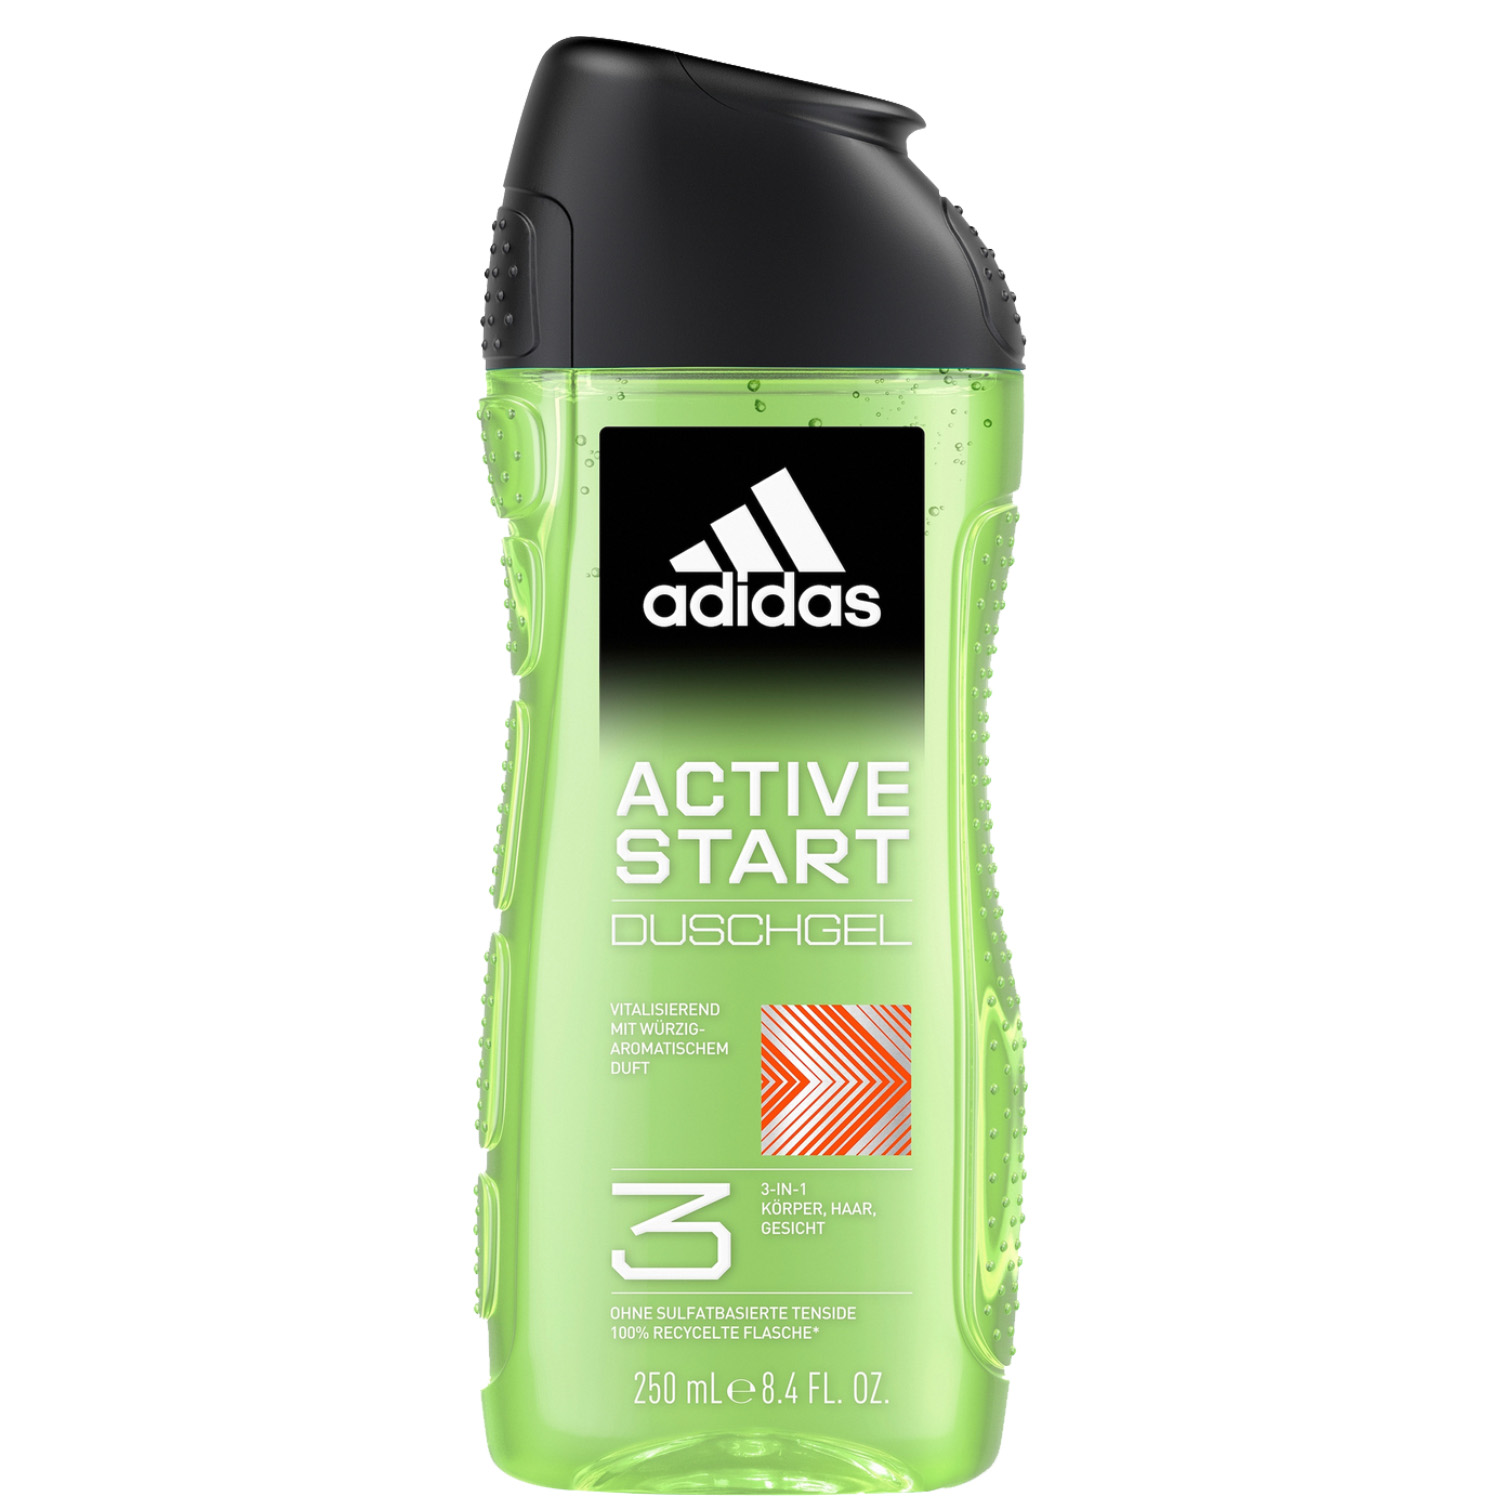 Adidas Active Start 3in1 Shower Gel 250ml